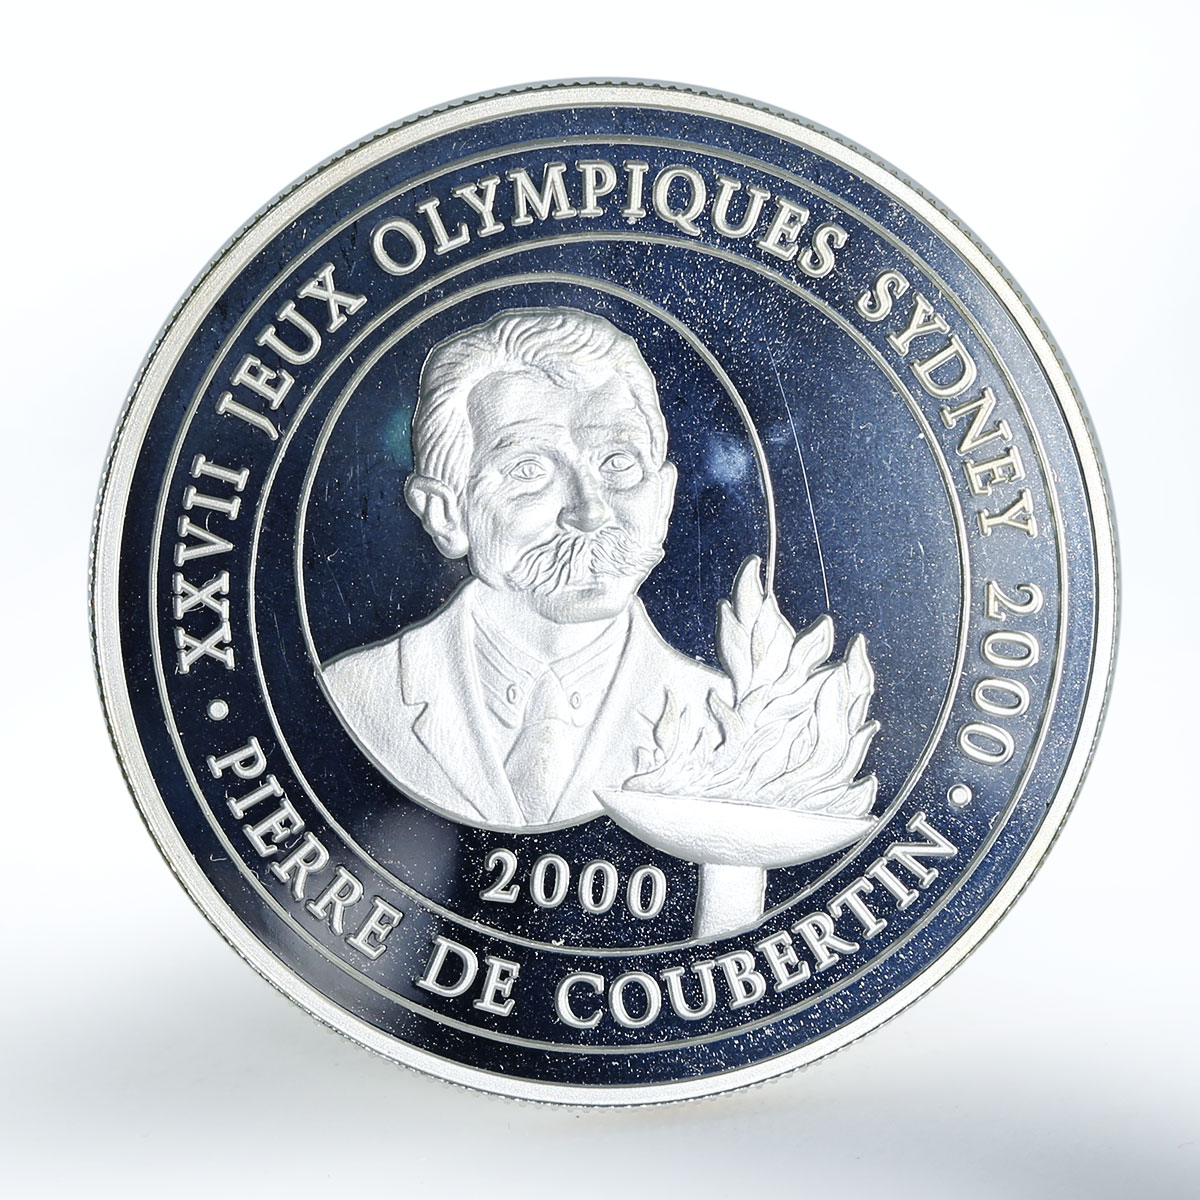 Congo 10 francs Sydney 2000 Pierre De Coubertin silver coin 2000